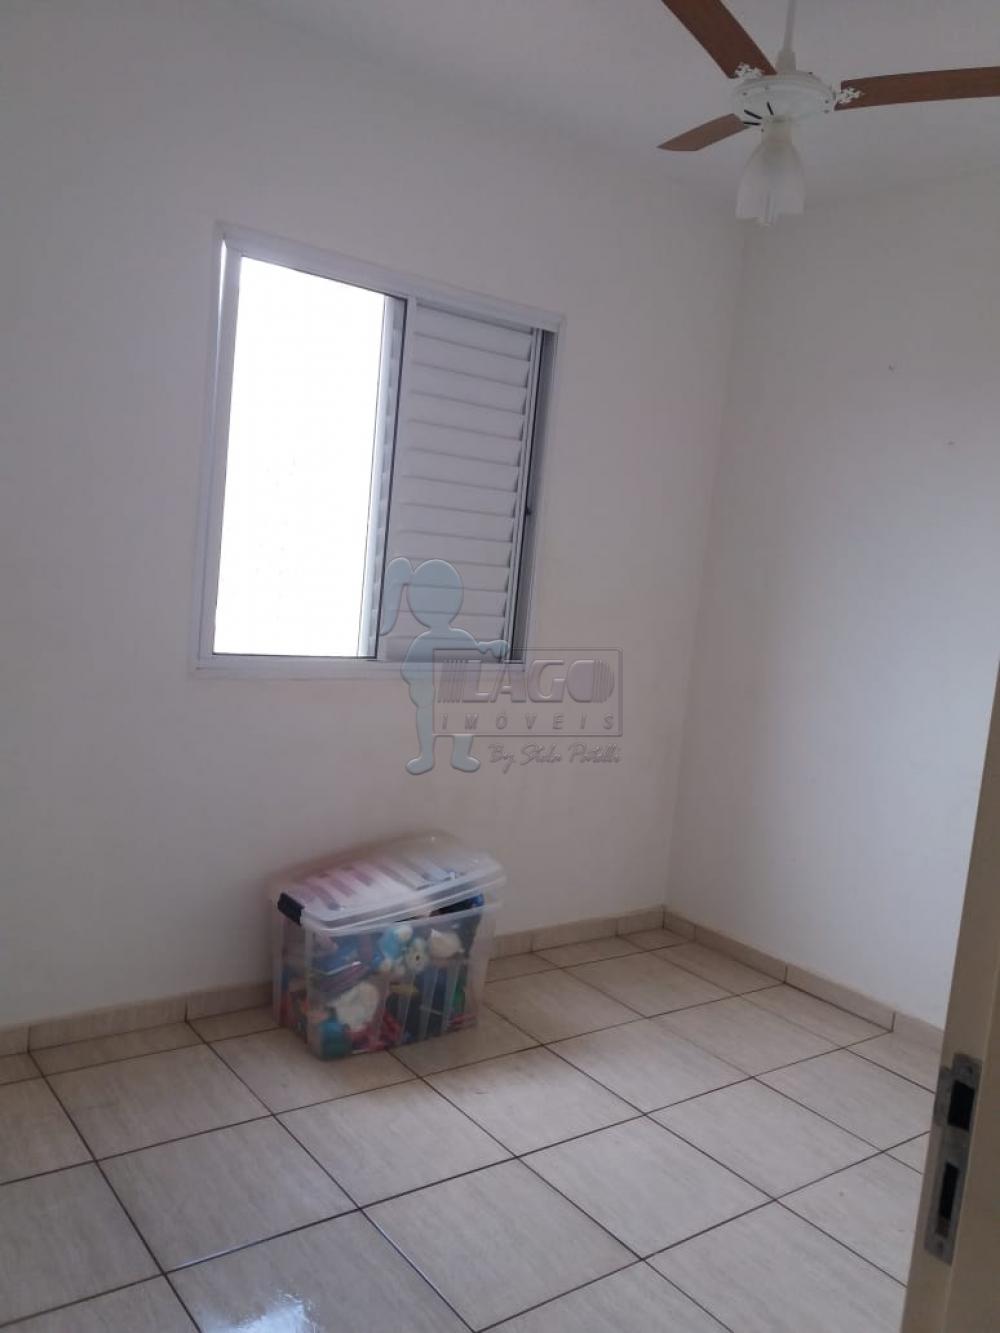 Comprar Apartamentos / Padrão em Ribeirão Preto R$ 170.000,00 - Foto 9